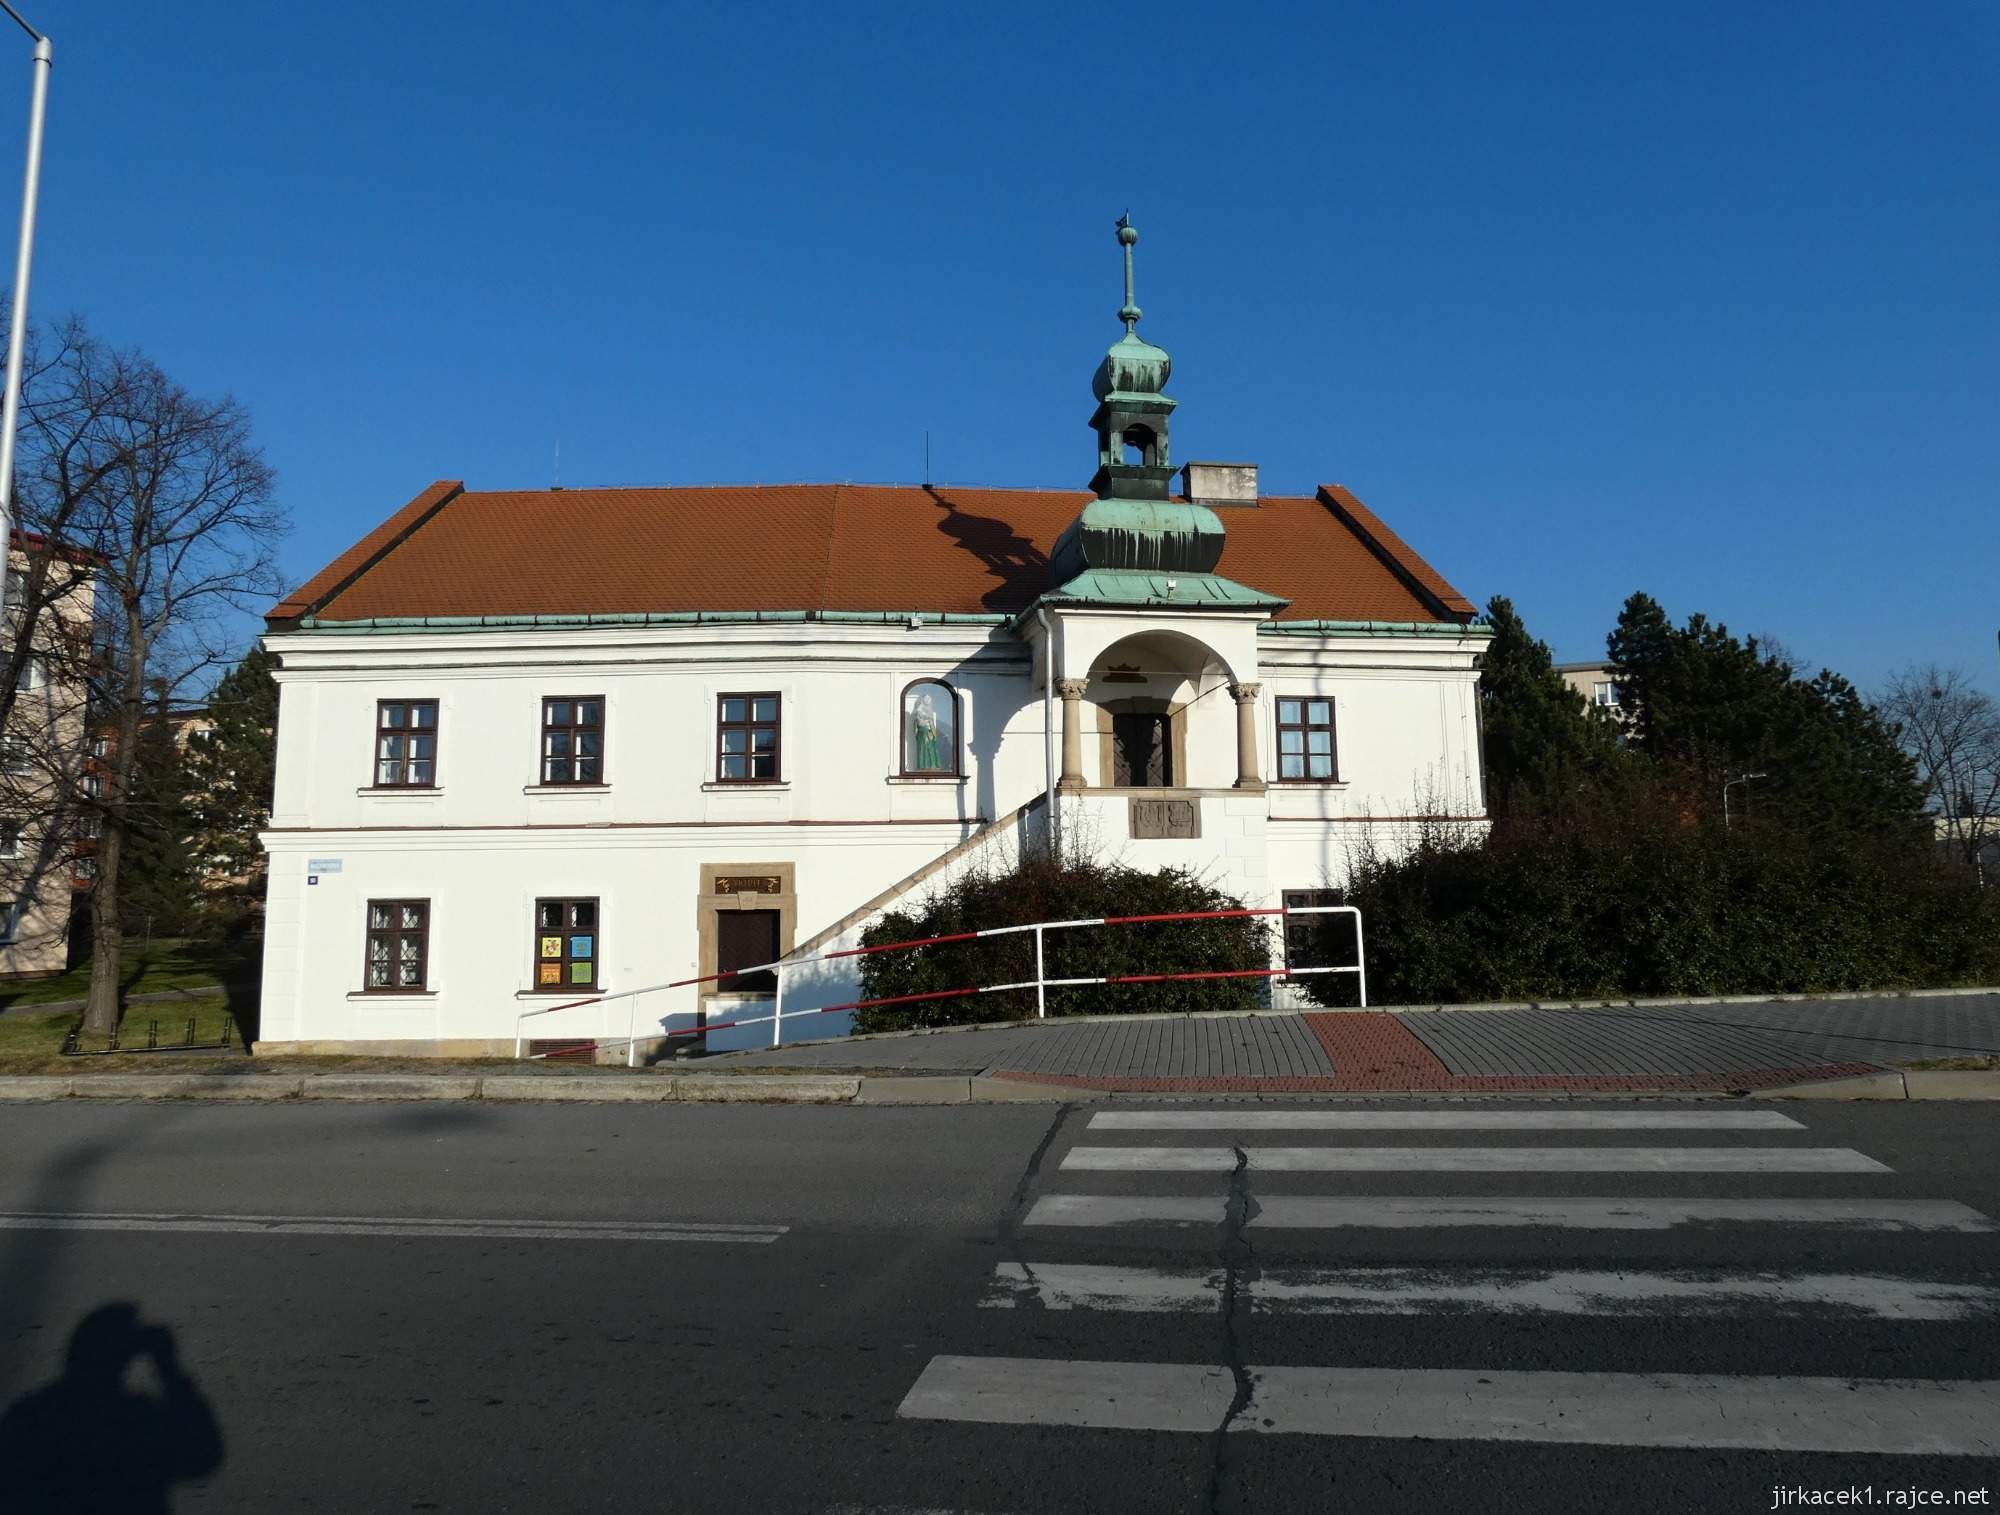 Valašské Meziříčí - stará krásenská radnice 07 - čelní pohled